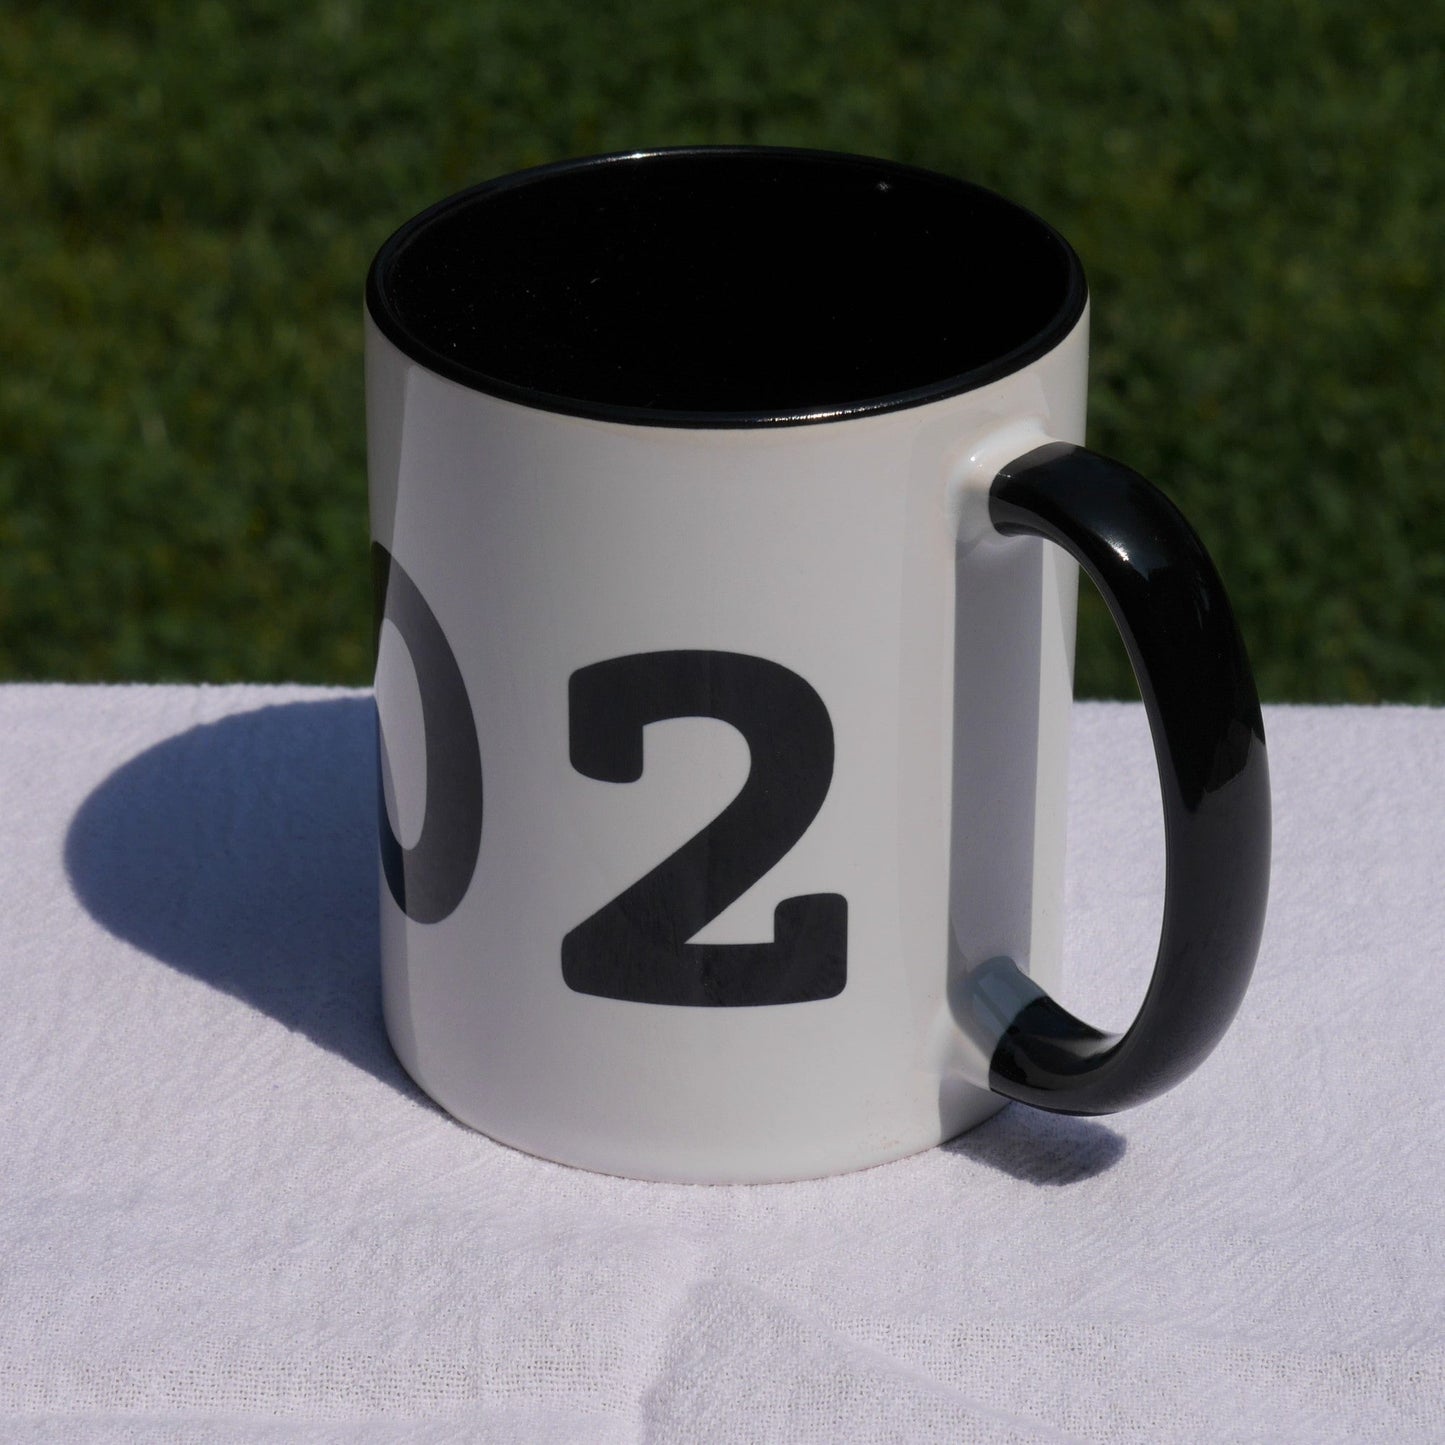 Aviation-Theme Coffee Mug - Black • YXS Prince George • YHM Designs - Image 06